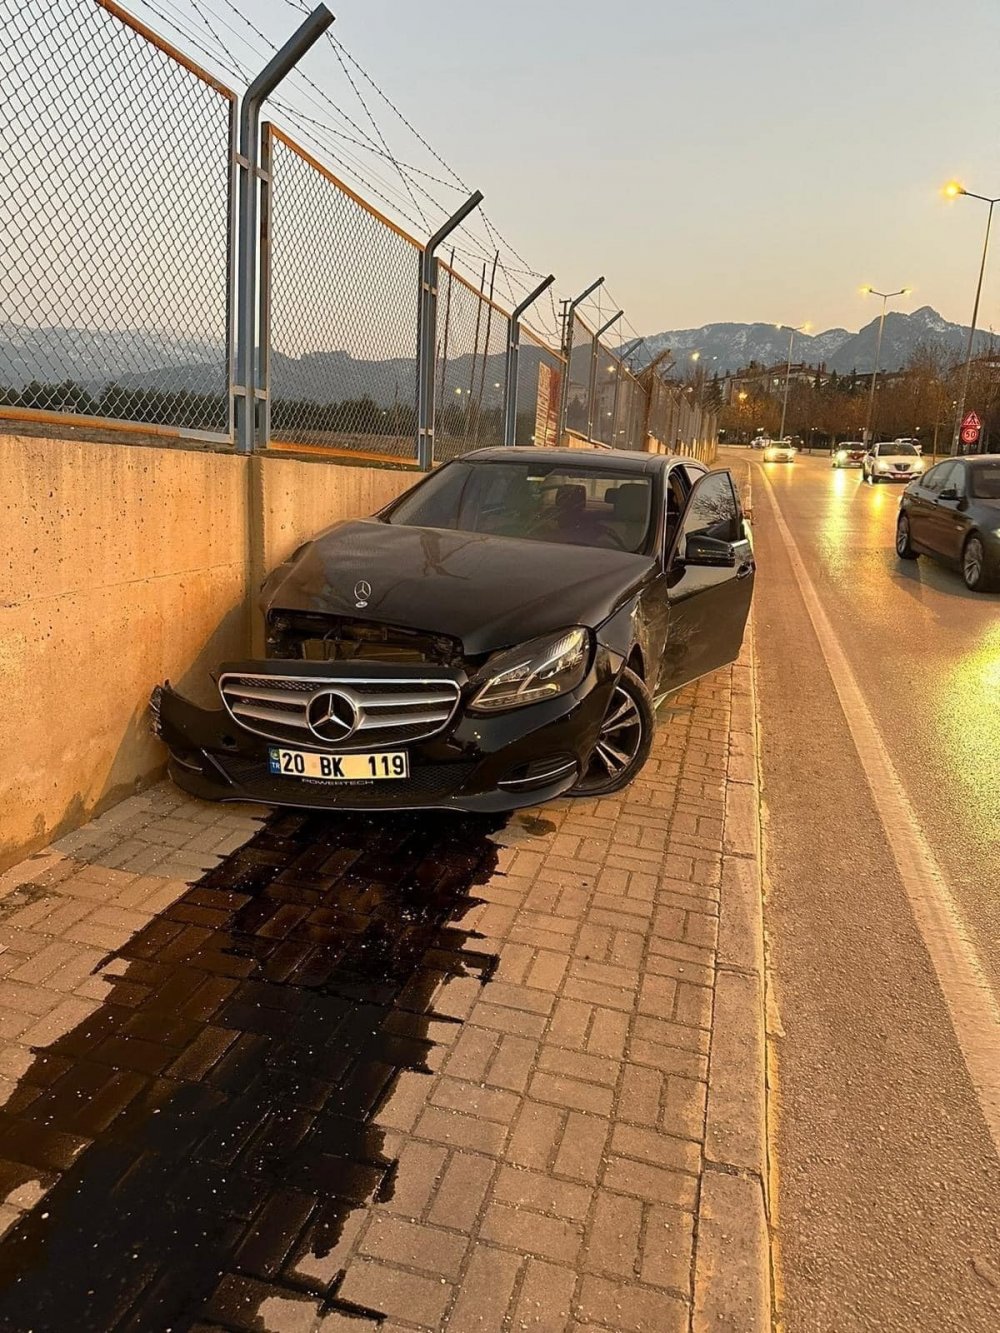 DEVA Partisi Denizli İl Başkanı Bekir Kırar, lüks otomobiliyle beton duvara çarptı. Kazanın ardından Bekir Kırar hafif yaralı olarak özel hastaneye kaldırıldı.